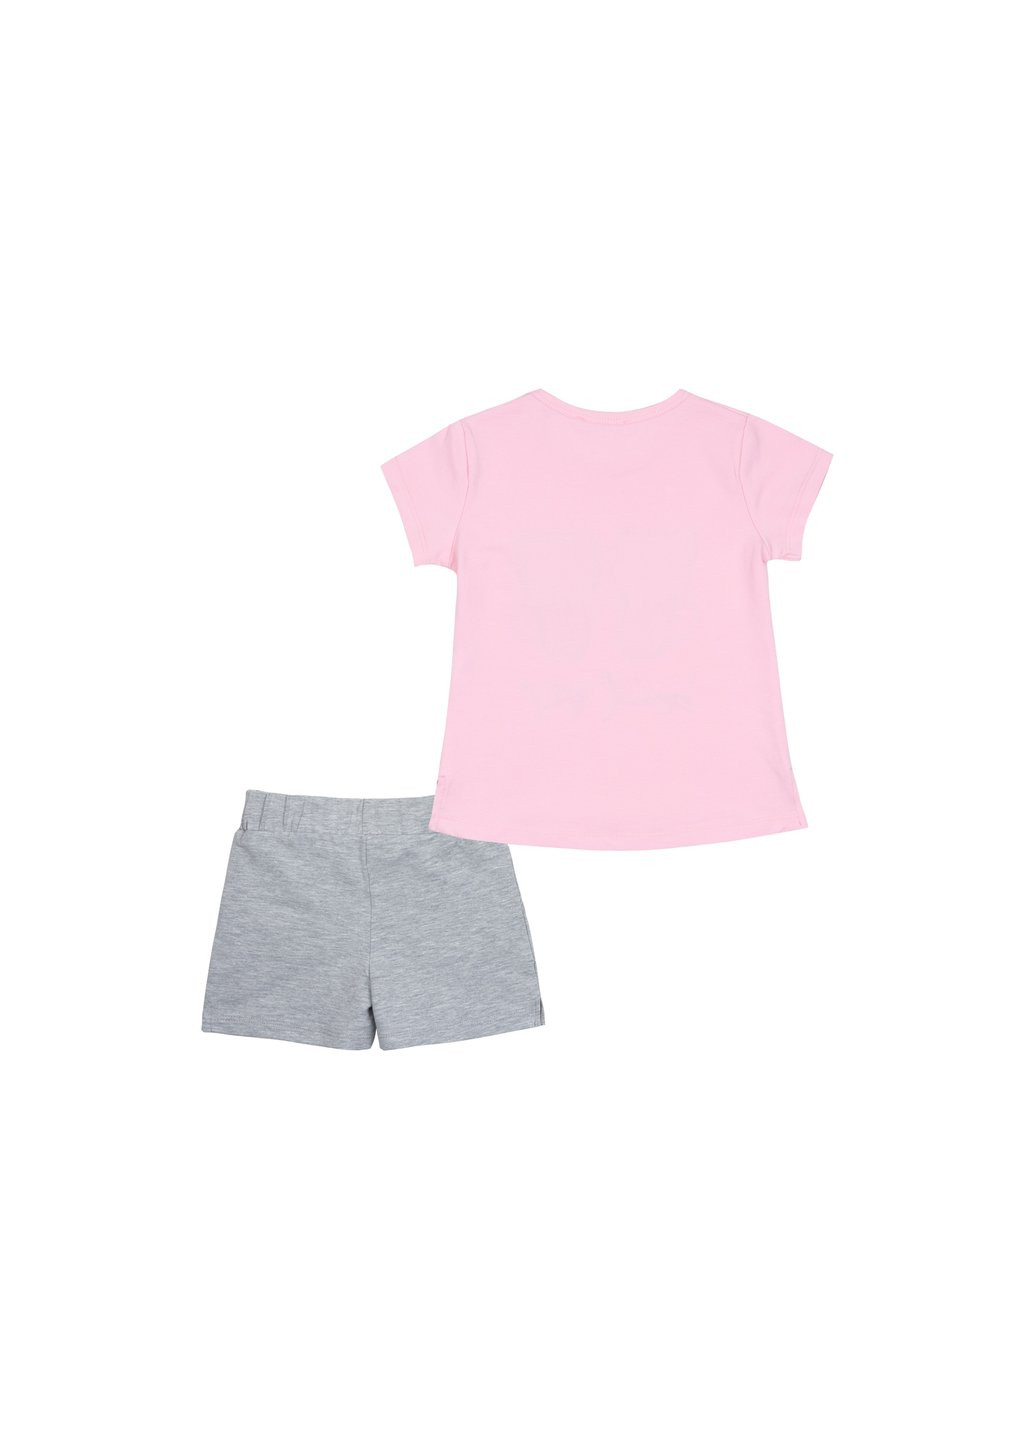 Комбинированный летний набор детской одежды с котятами (10843-110g-pink) Breeze